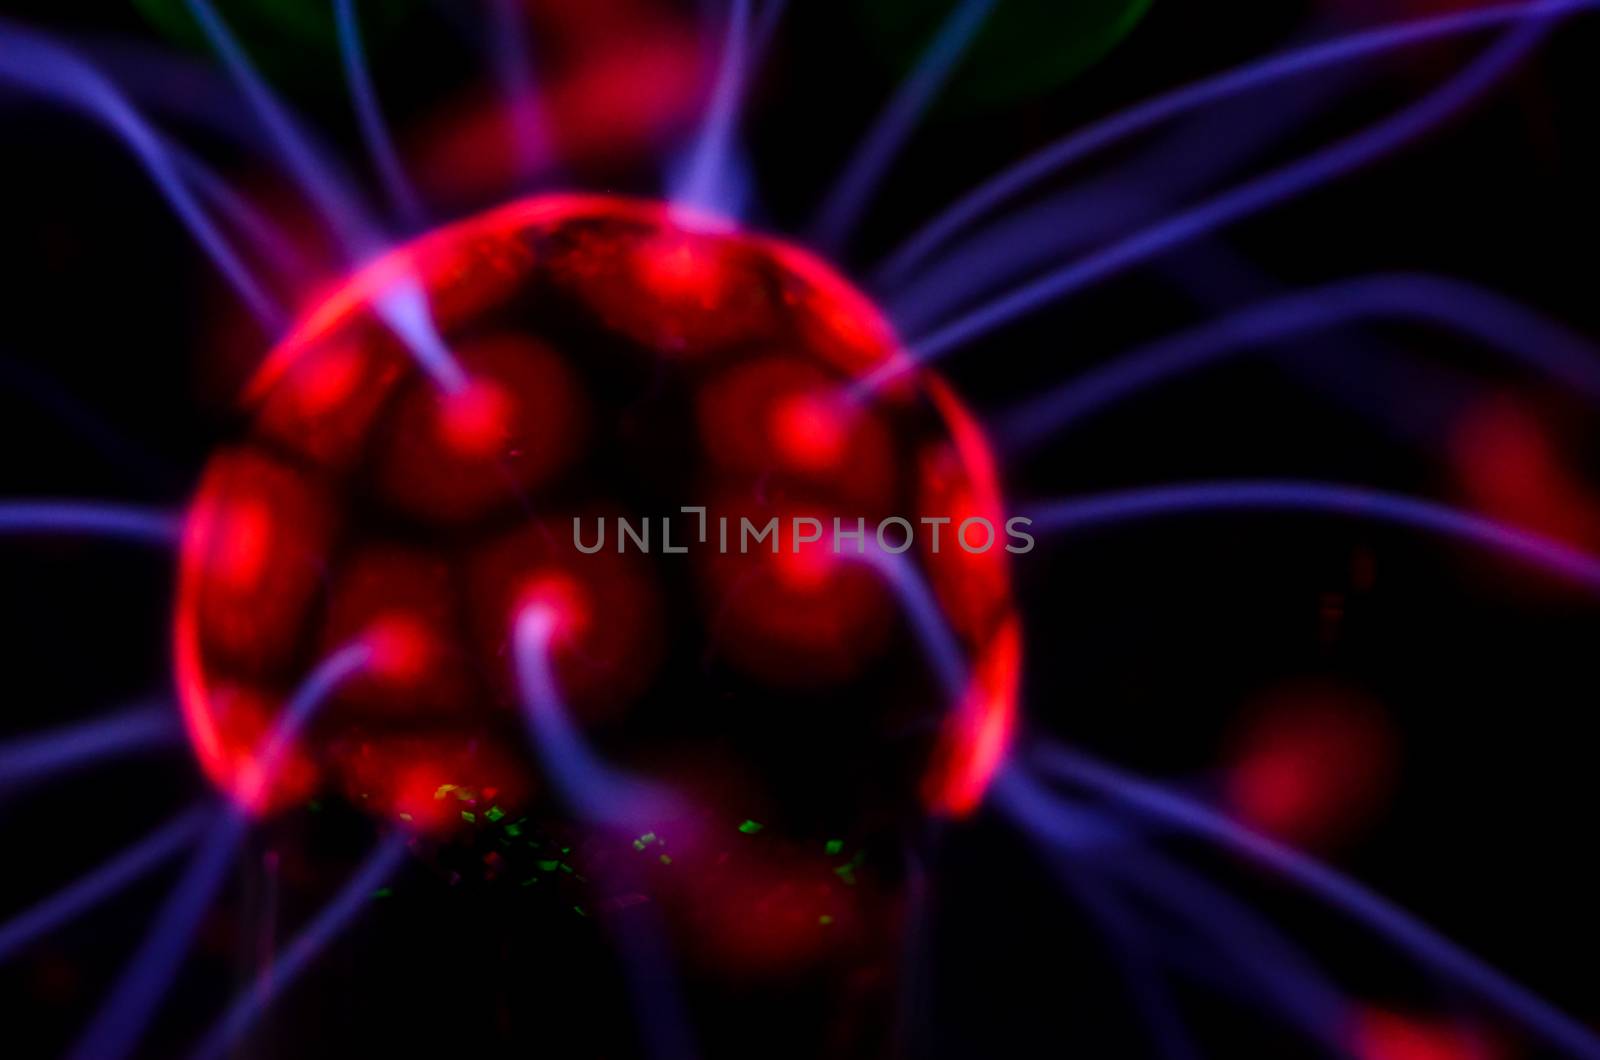 Tesla sphere by underworld